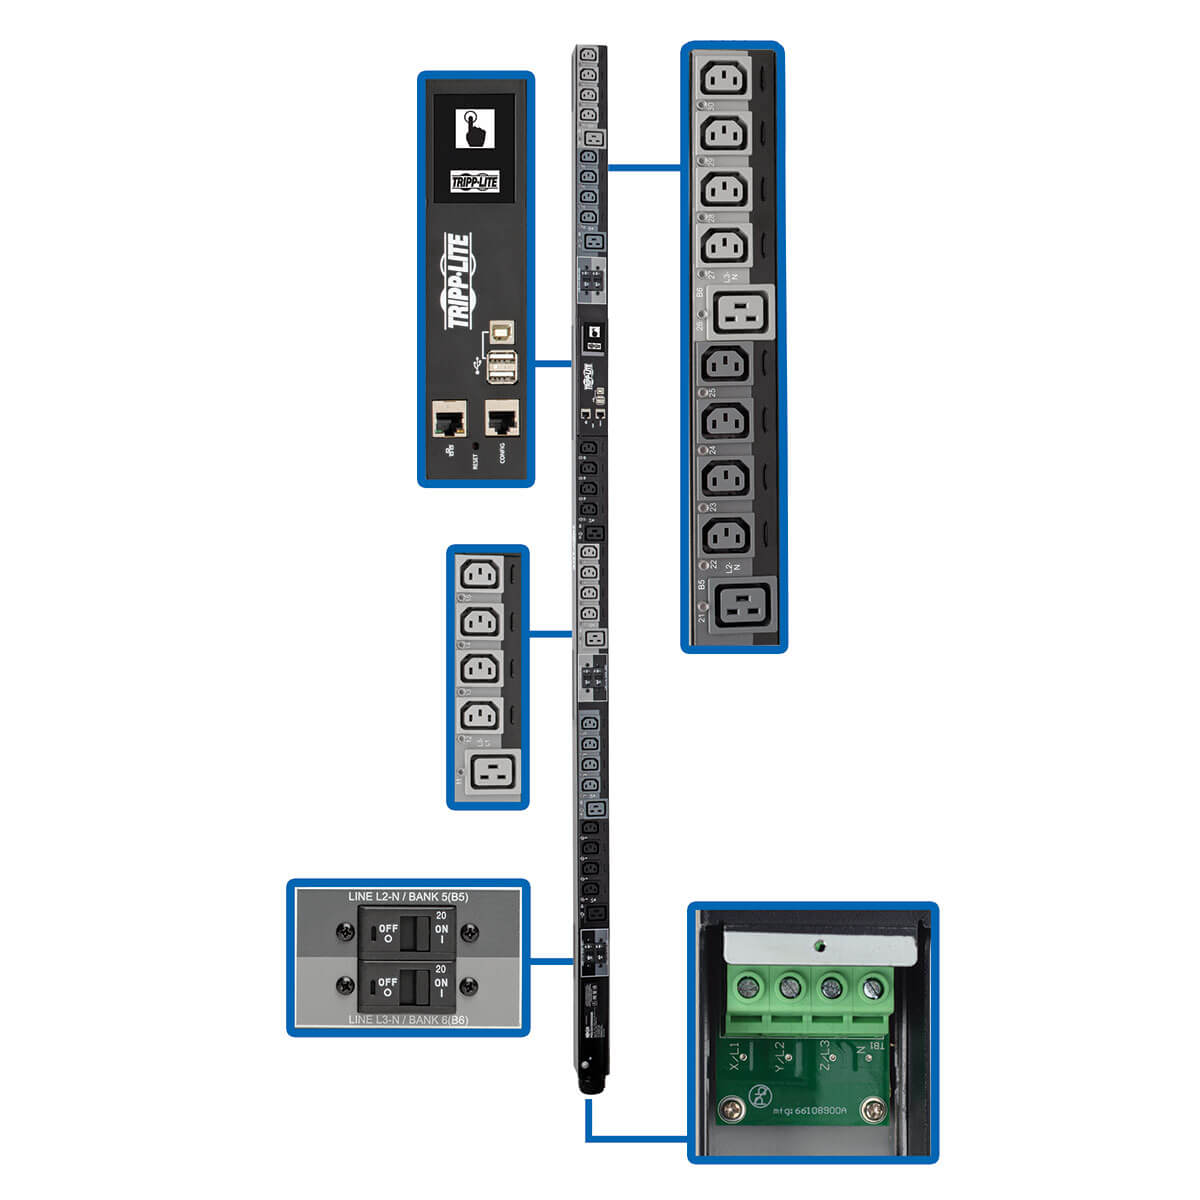 Блок распределения питания (БРП/PDU) PDU3XEVSRHWB трехфазный управляемый с интерфейсом LX Platform, мощность 28,8 кВт; розетки на 220-240 В (24 шт. типа C13 / 6 шт. типа C19), ЖК-экран, вход 380-415 В с жестким кабельным подключением